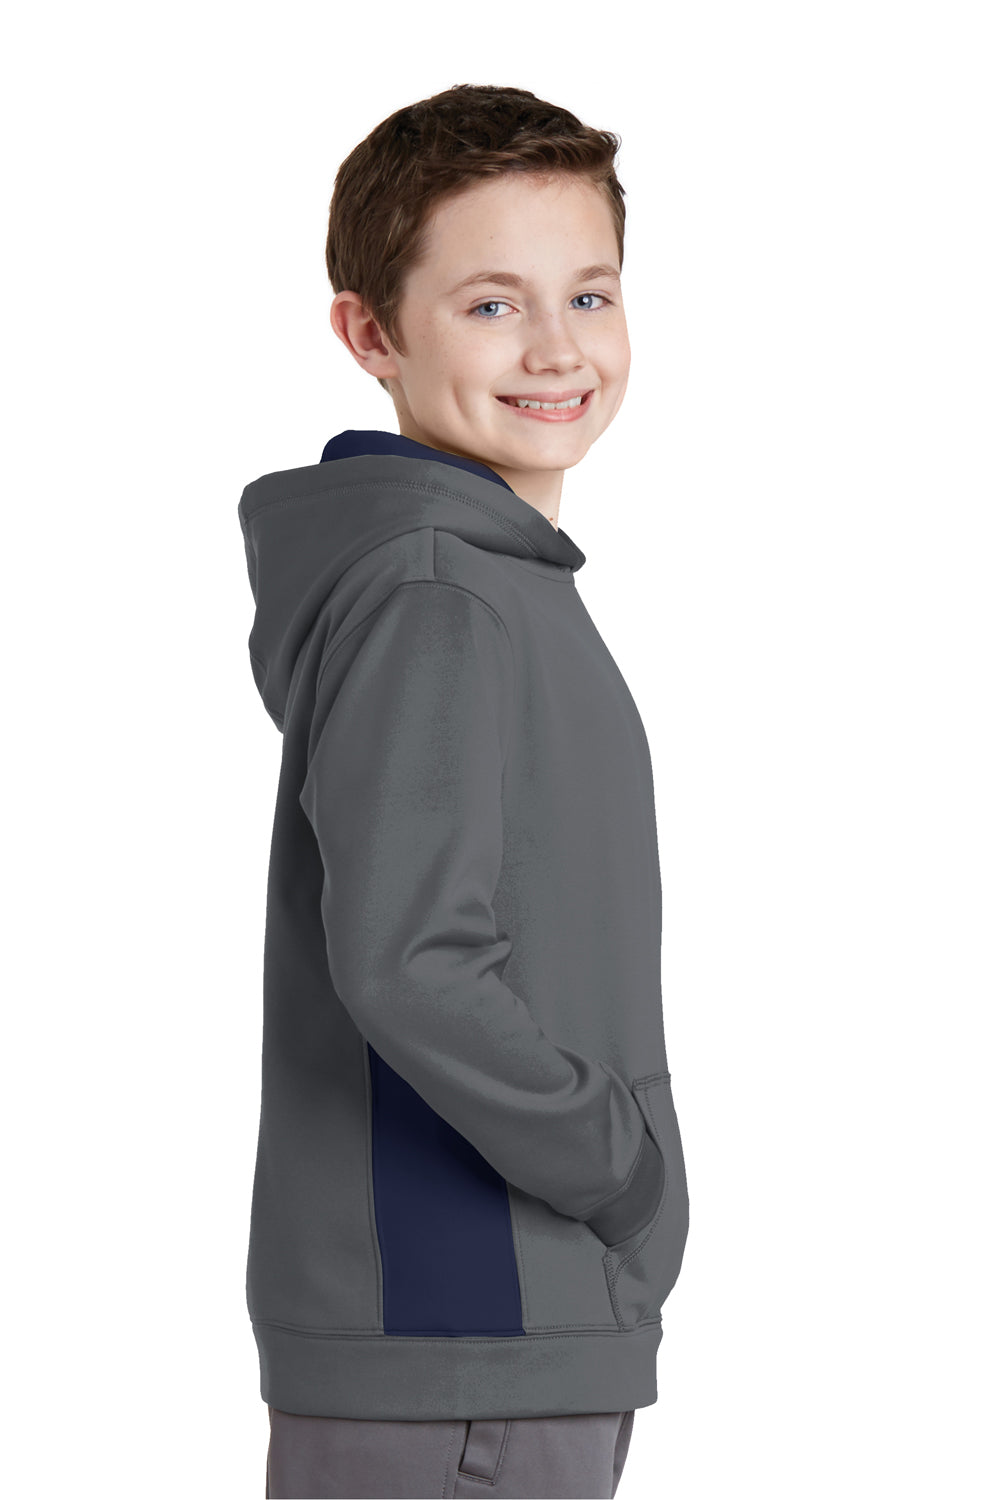 Sport-Tek YST235 Youth Sport-Wick Moisture Wicking Fleece Hooded Sweatshirt Hoodie Dark Grey/Navy Blue Side